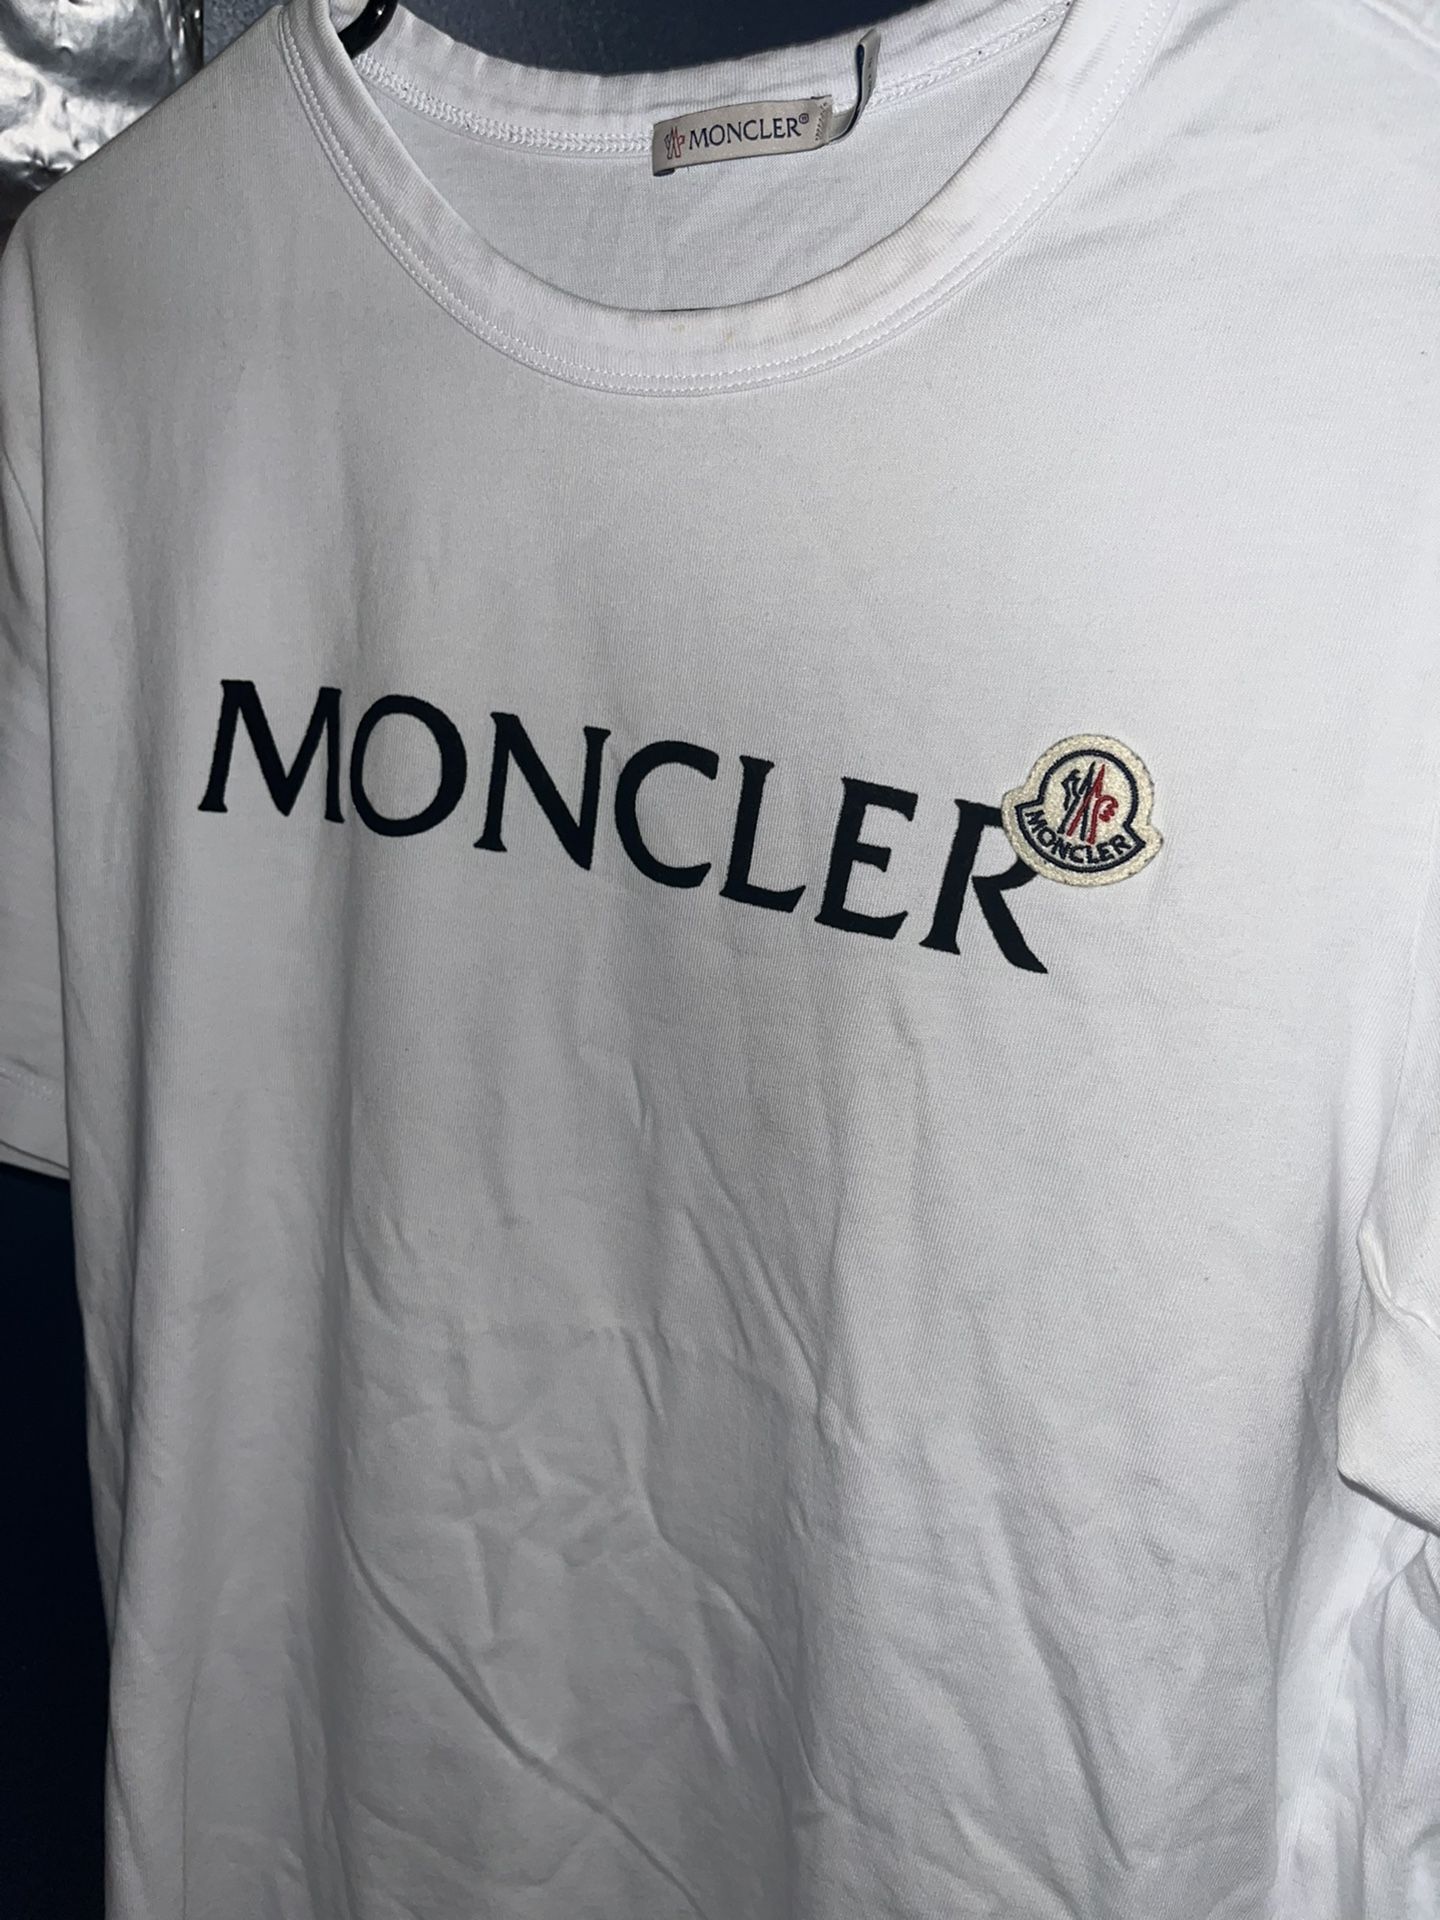 Moncler T Shirt Sz L